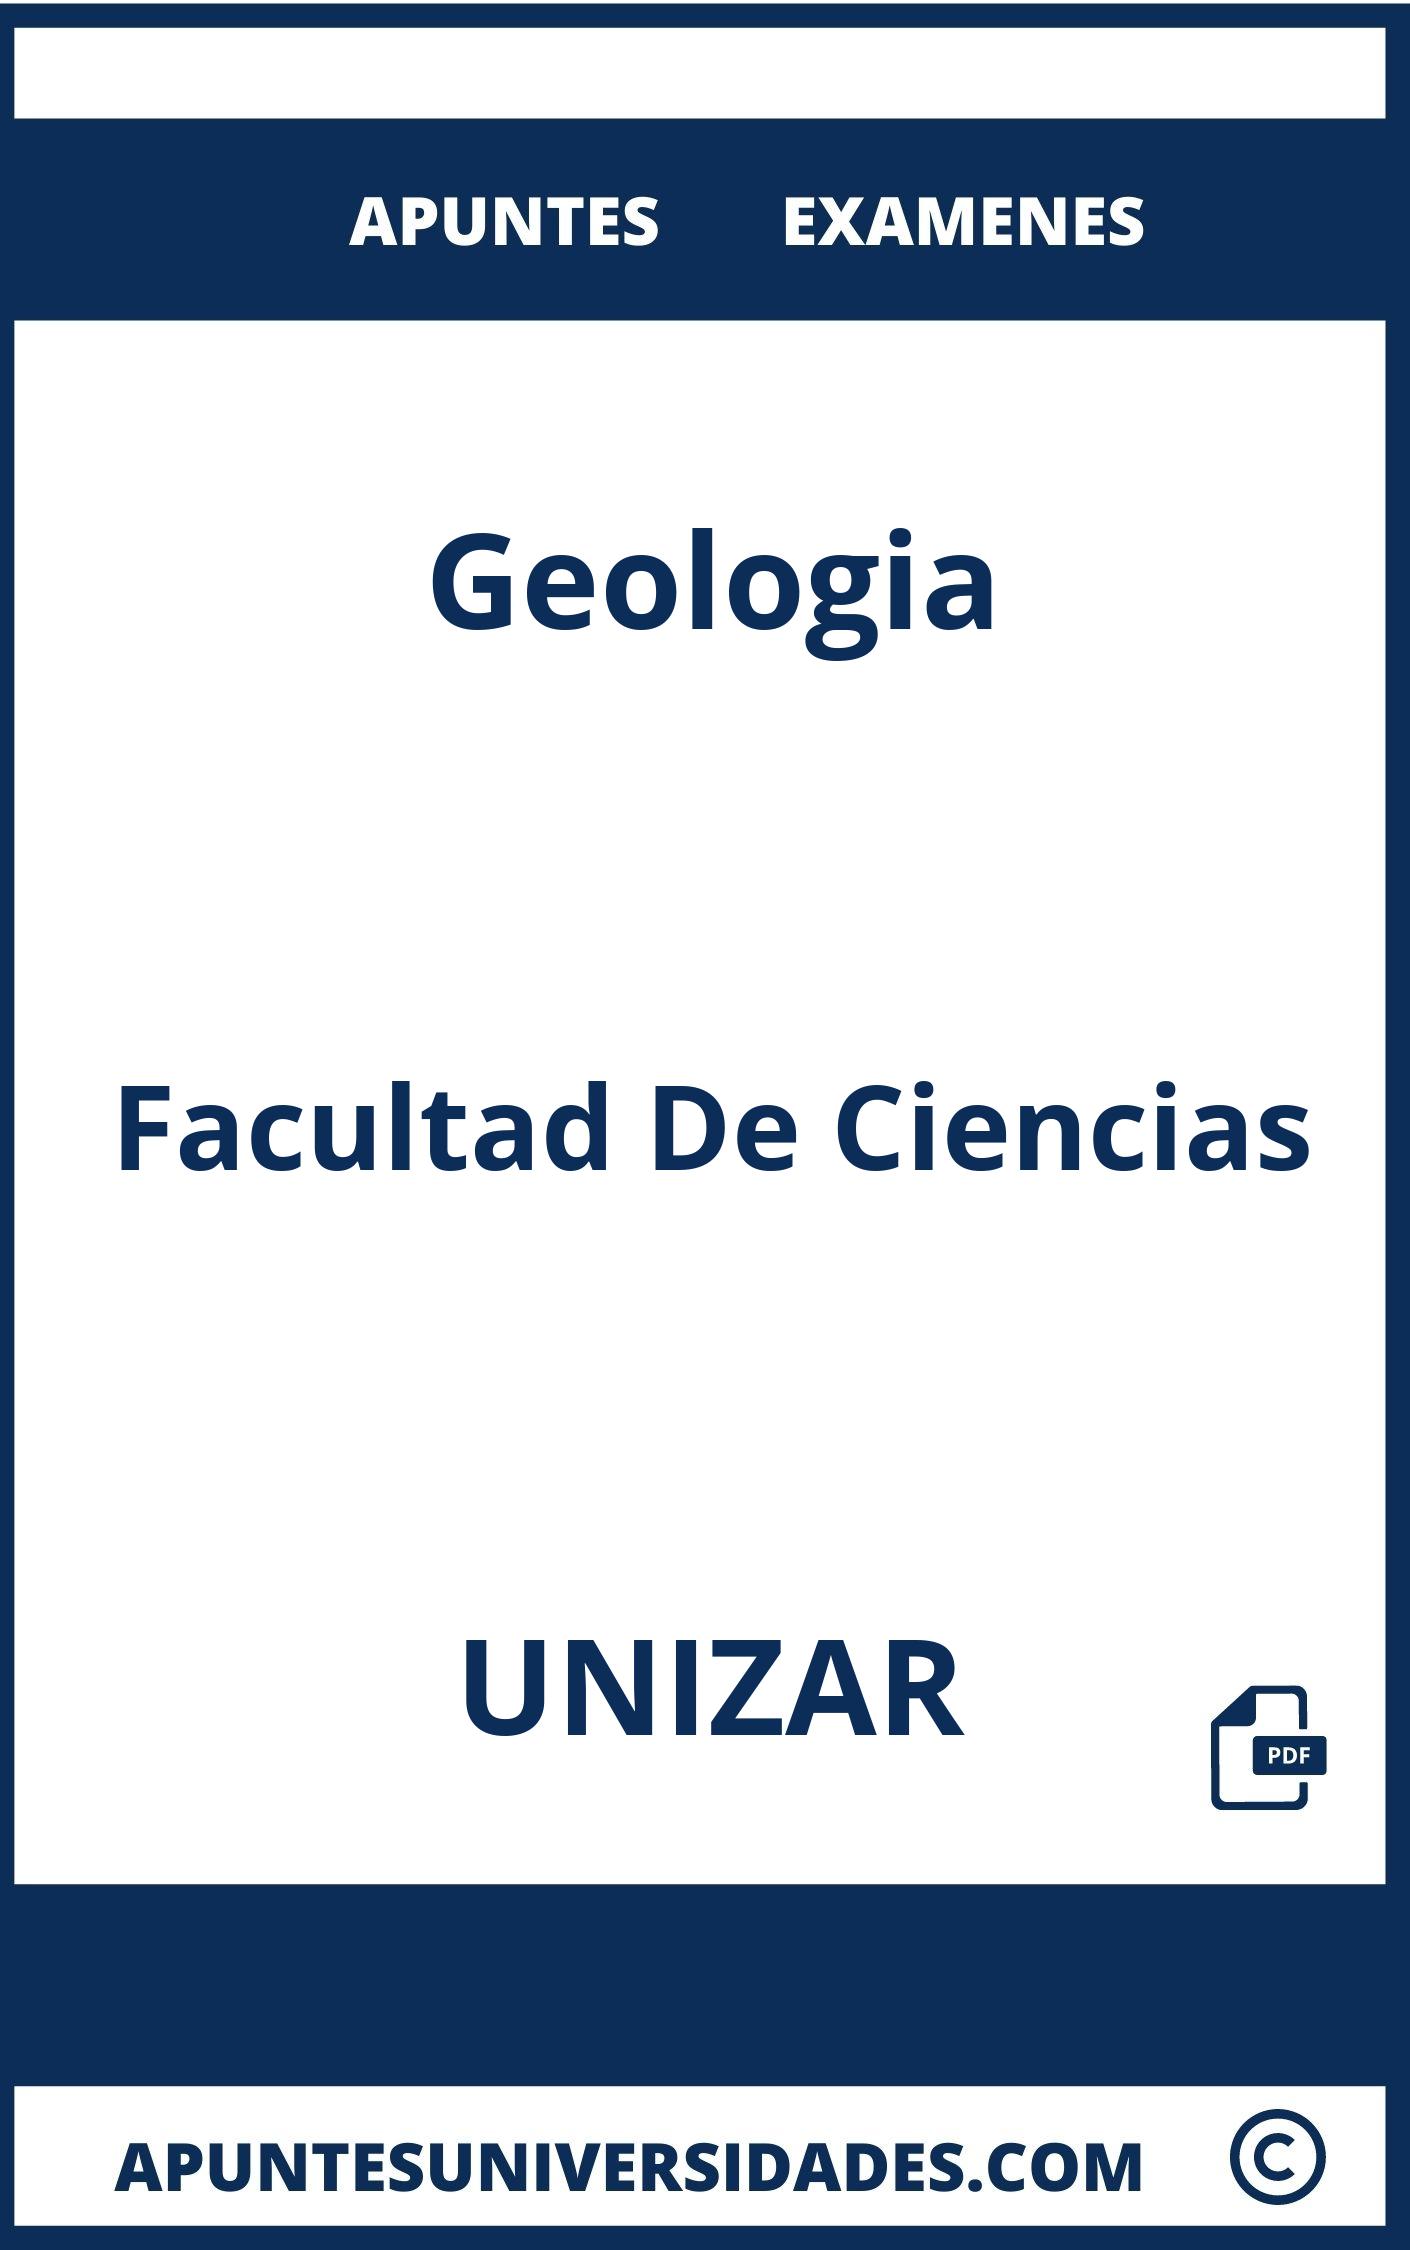 Examenes Geologia UNIZAR y Apuntes